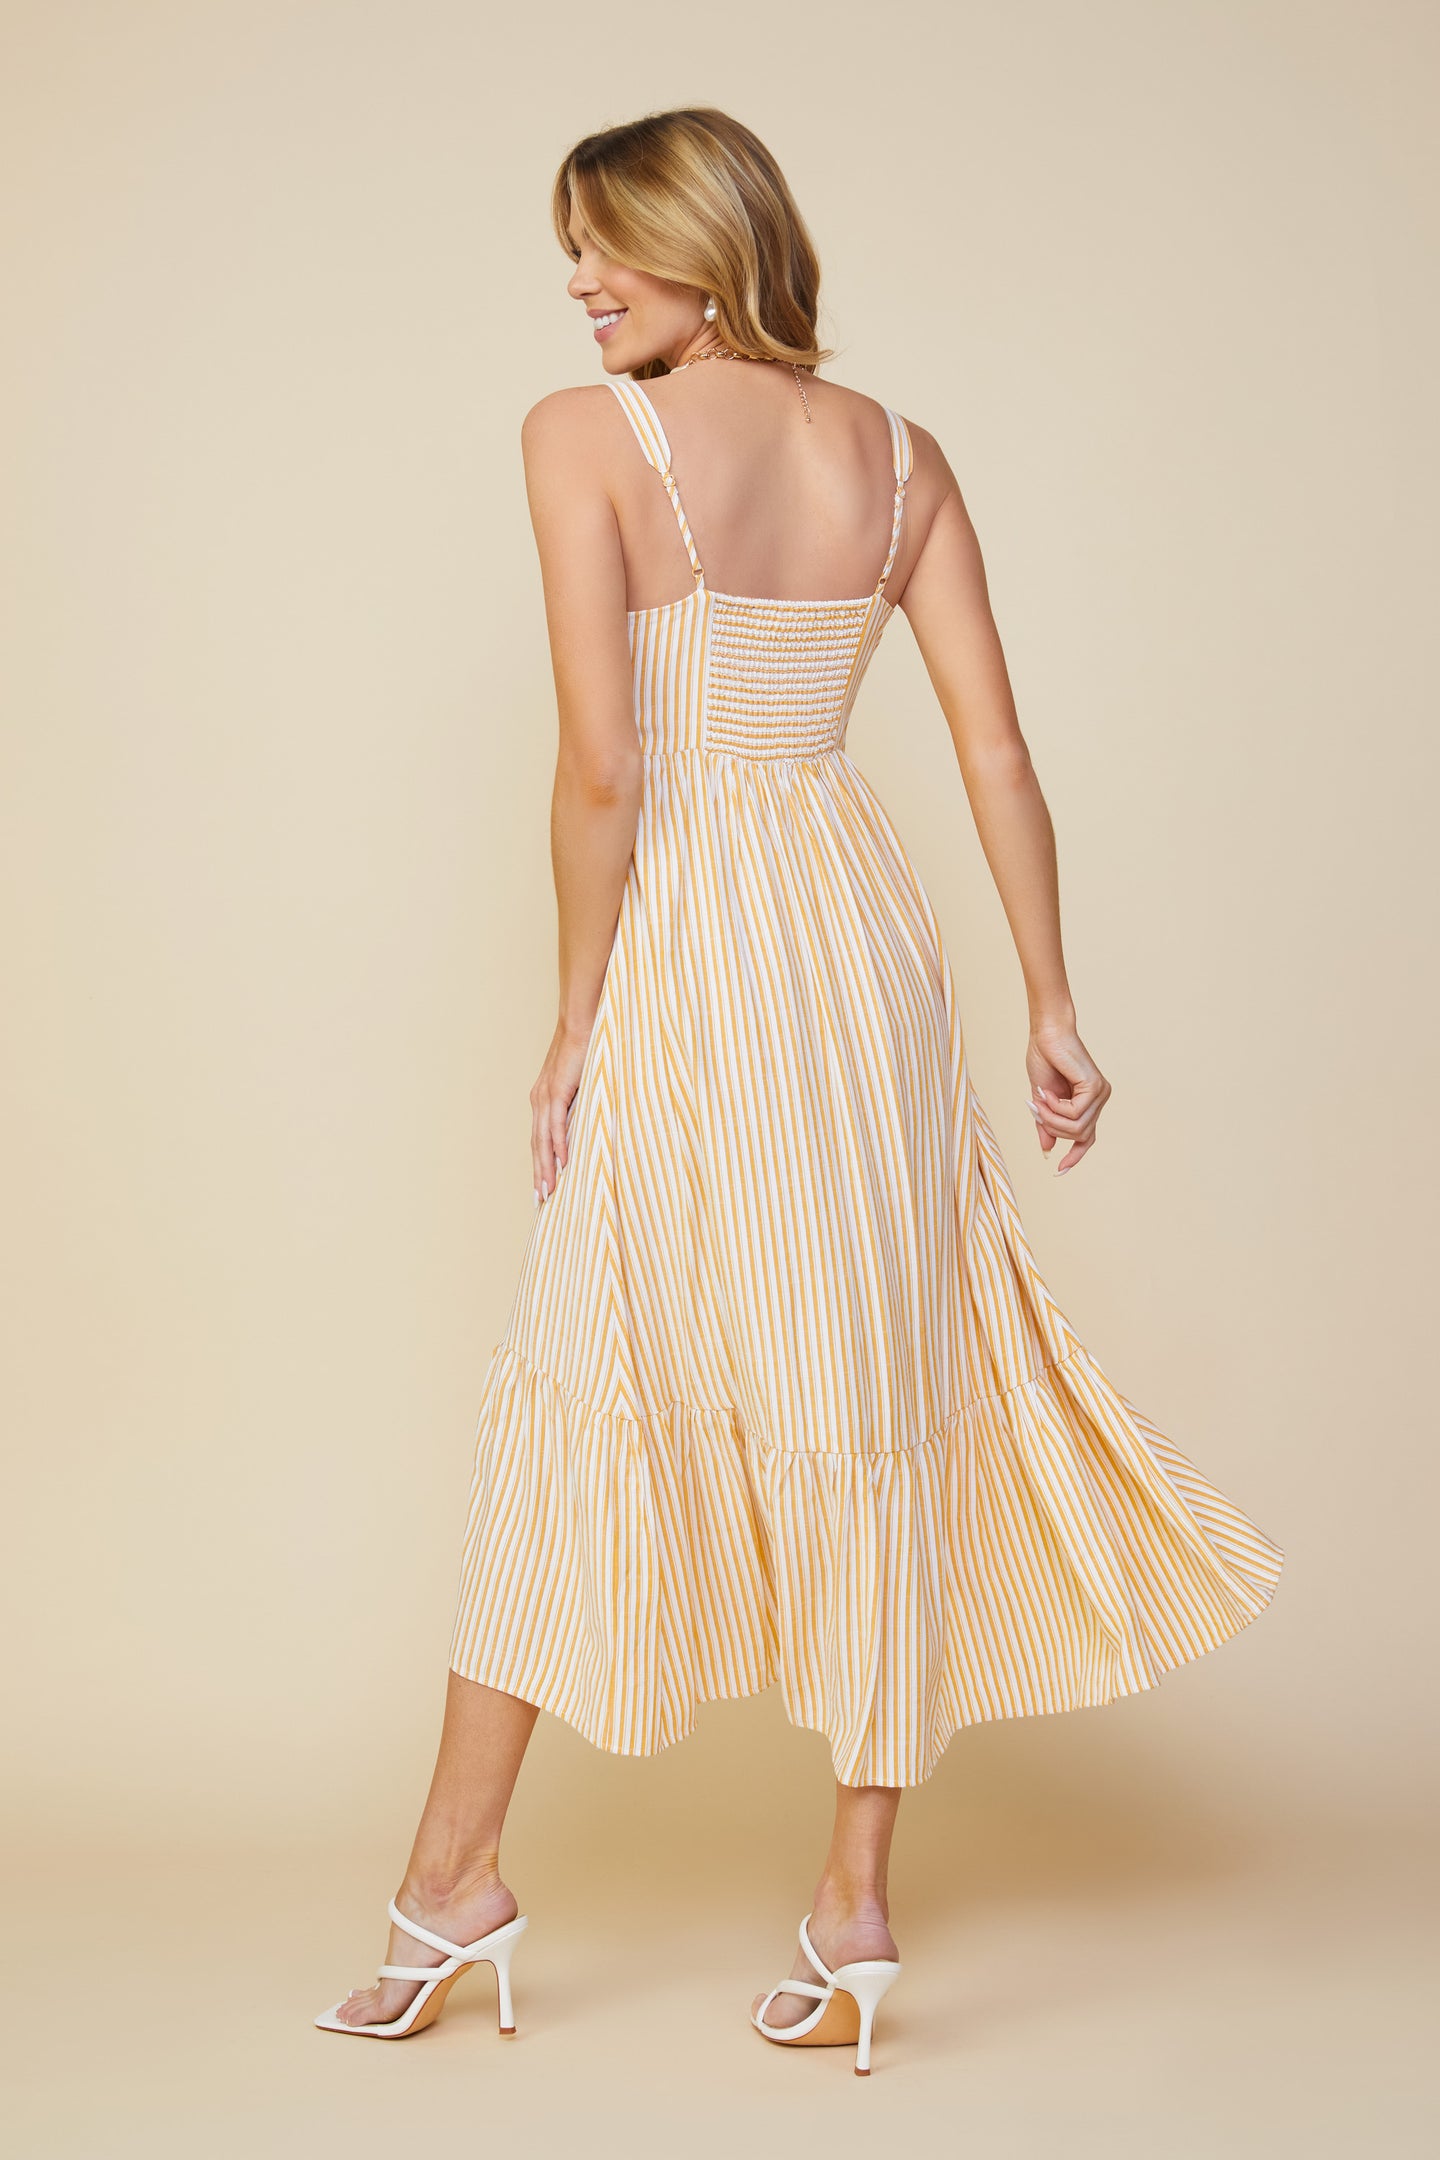 Skylie Striped Maxi Dress